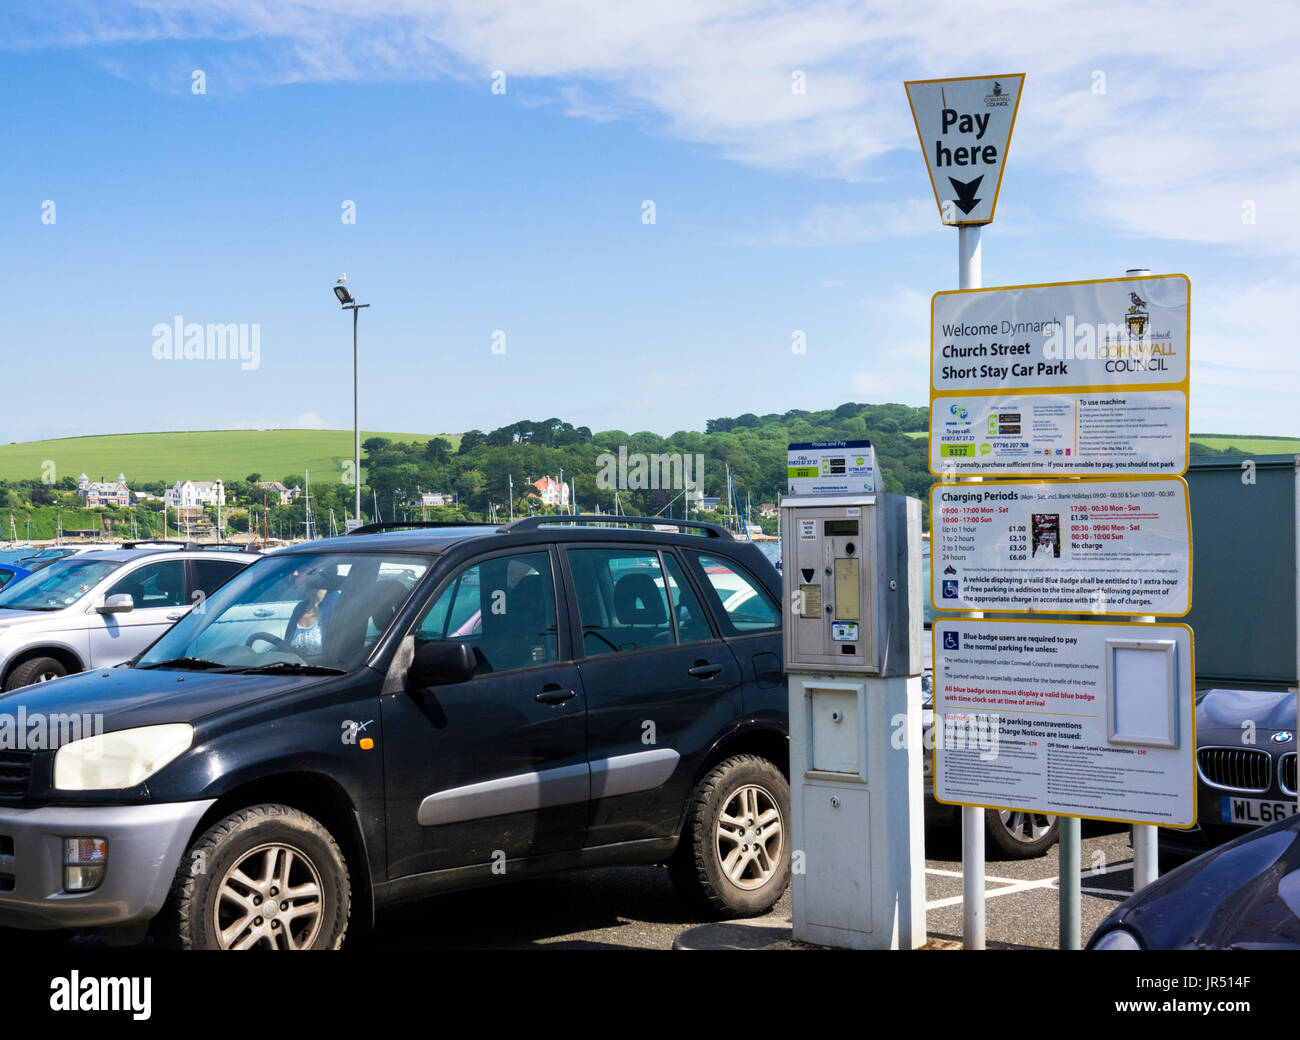 Breve soggiorno parcheggio auto piena di vetture in estate con pagare qui la macchina e le tasse, England, Regno Unito Foto Stock